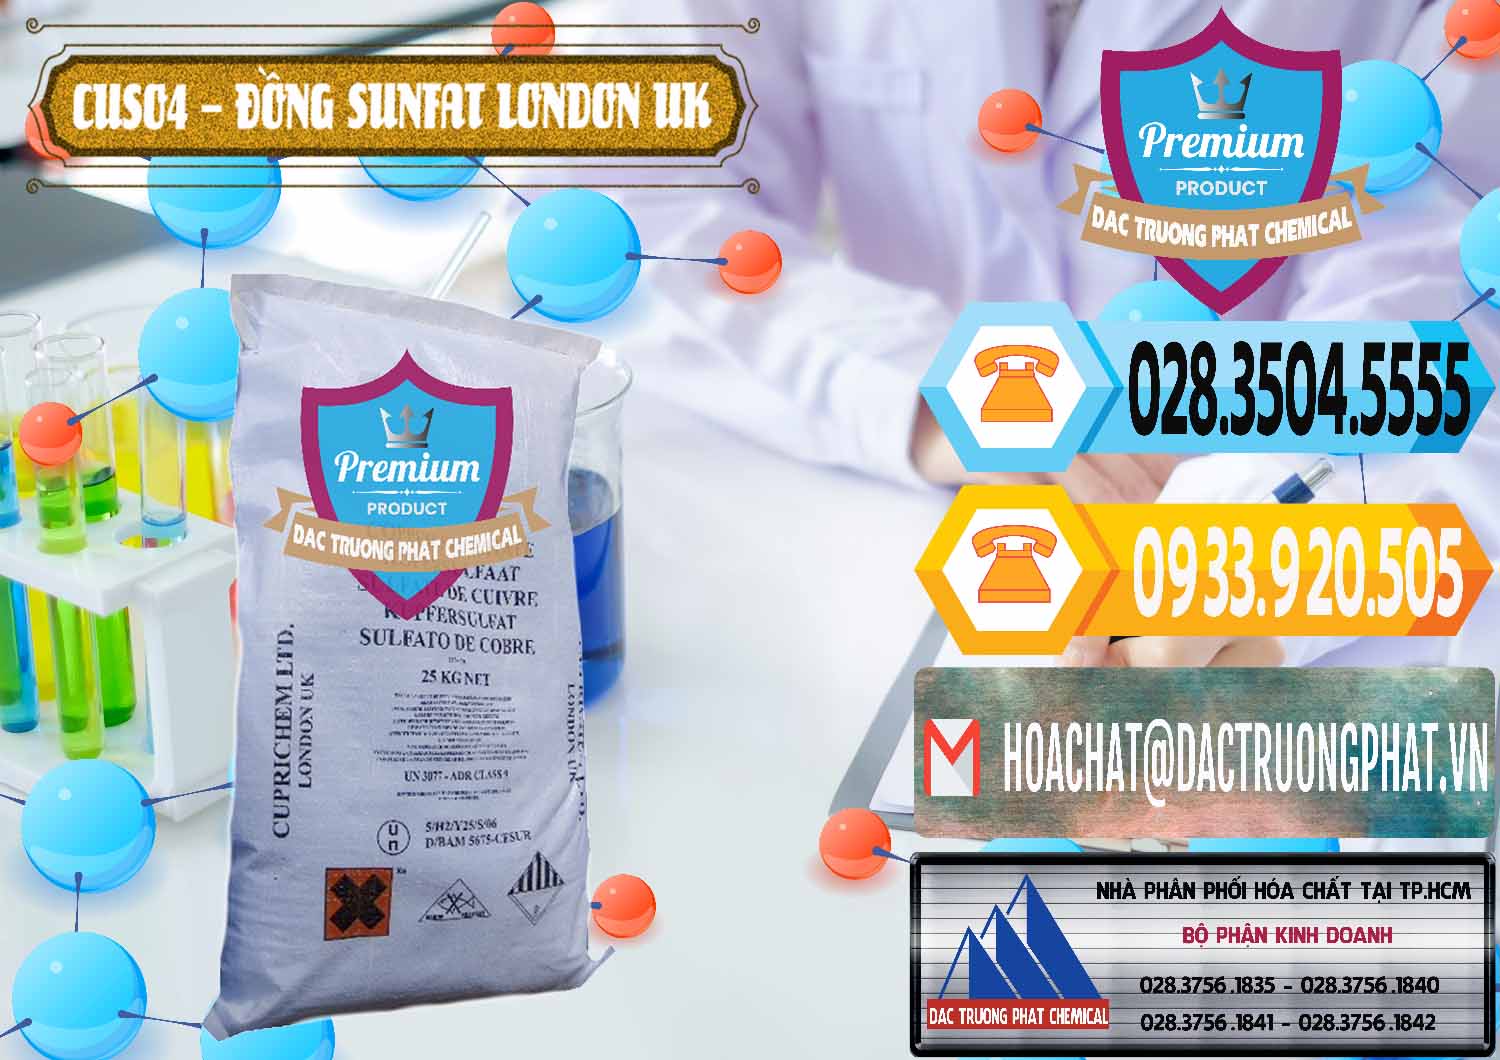 Đơn vị chuyên phân phối & bán CuSO4 – Đồng Sunfat Anh Uk Kingdoms - 0478 - Nhà phân phối và nhập khẩu hóa chất tại TP.HCM - hoachattayrua.net